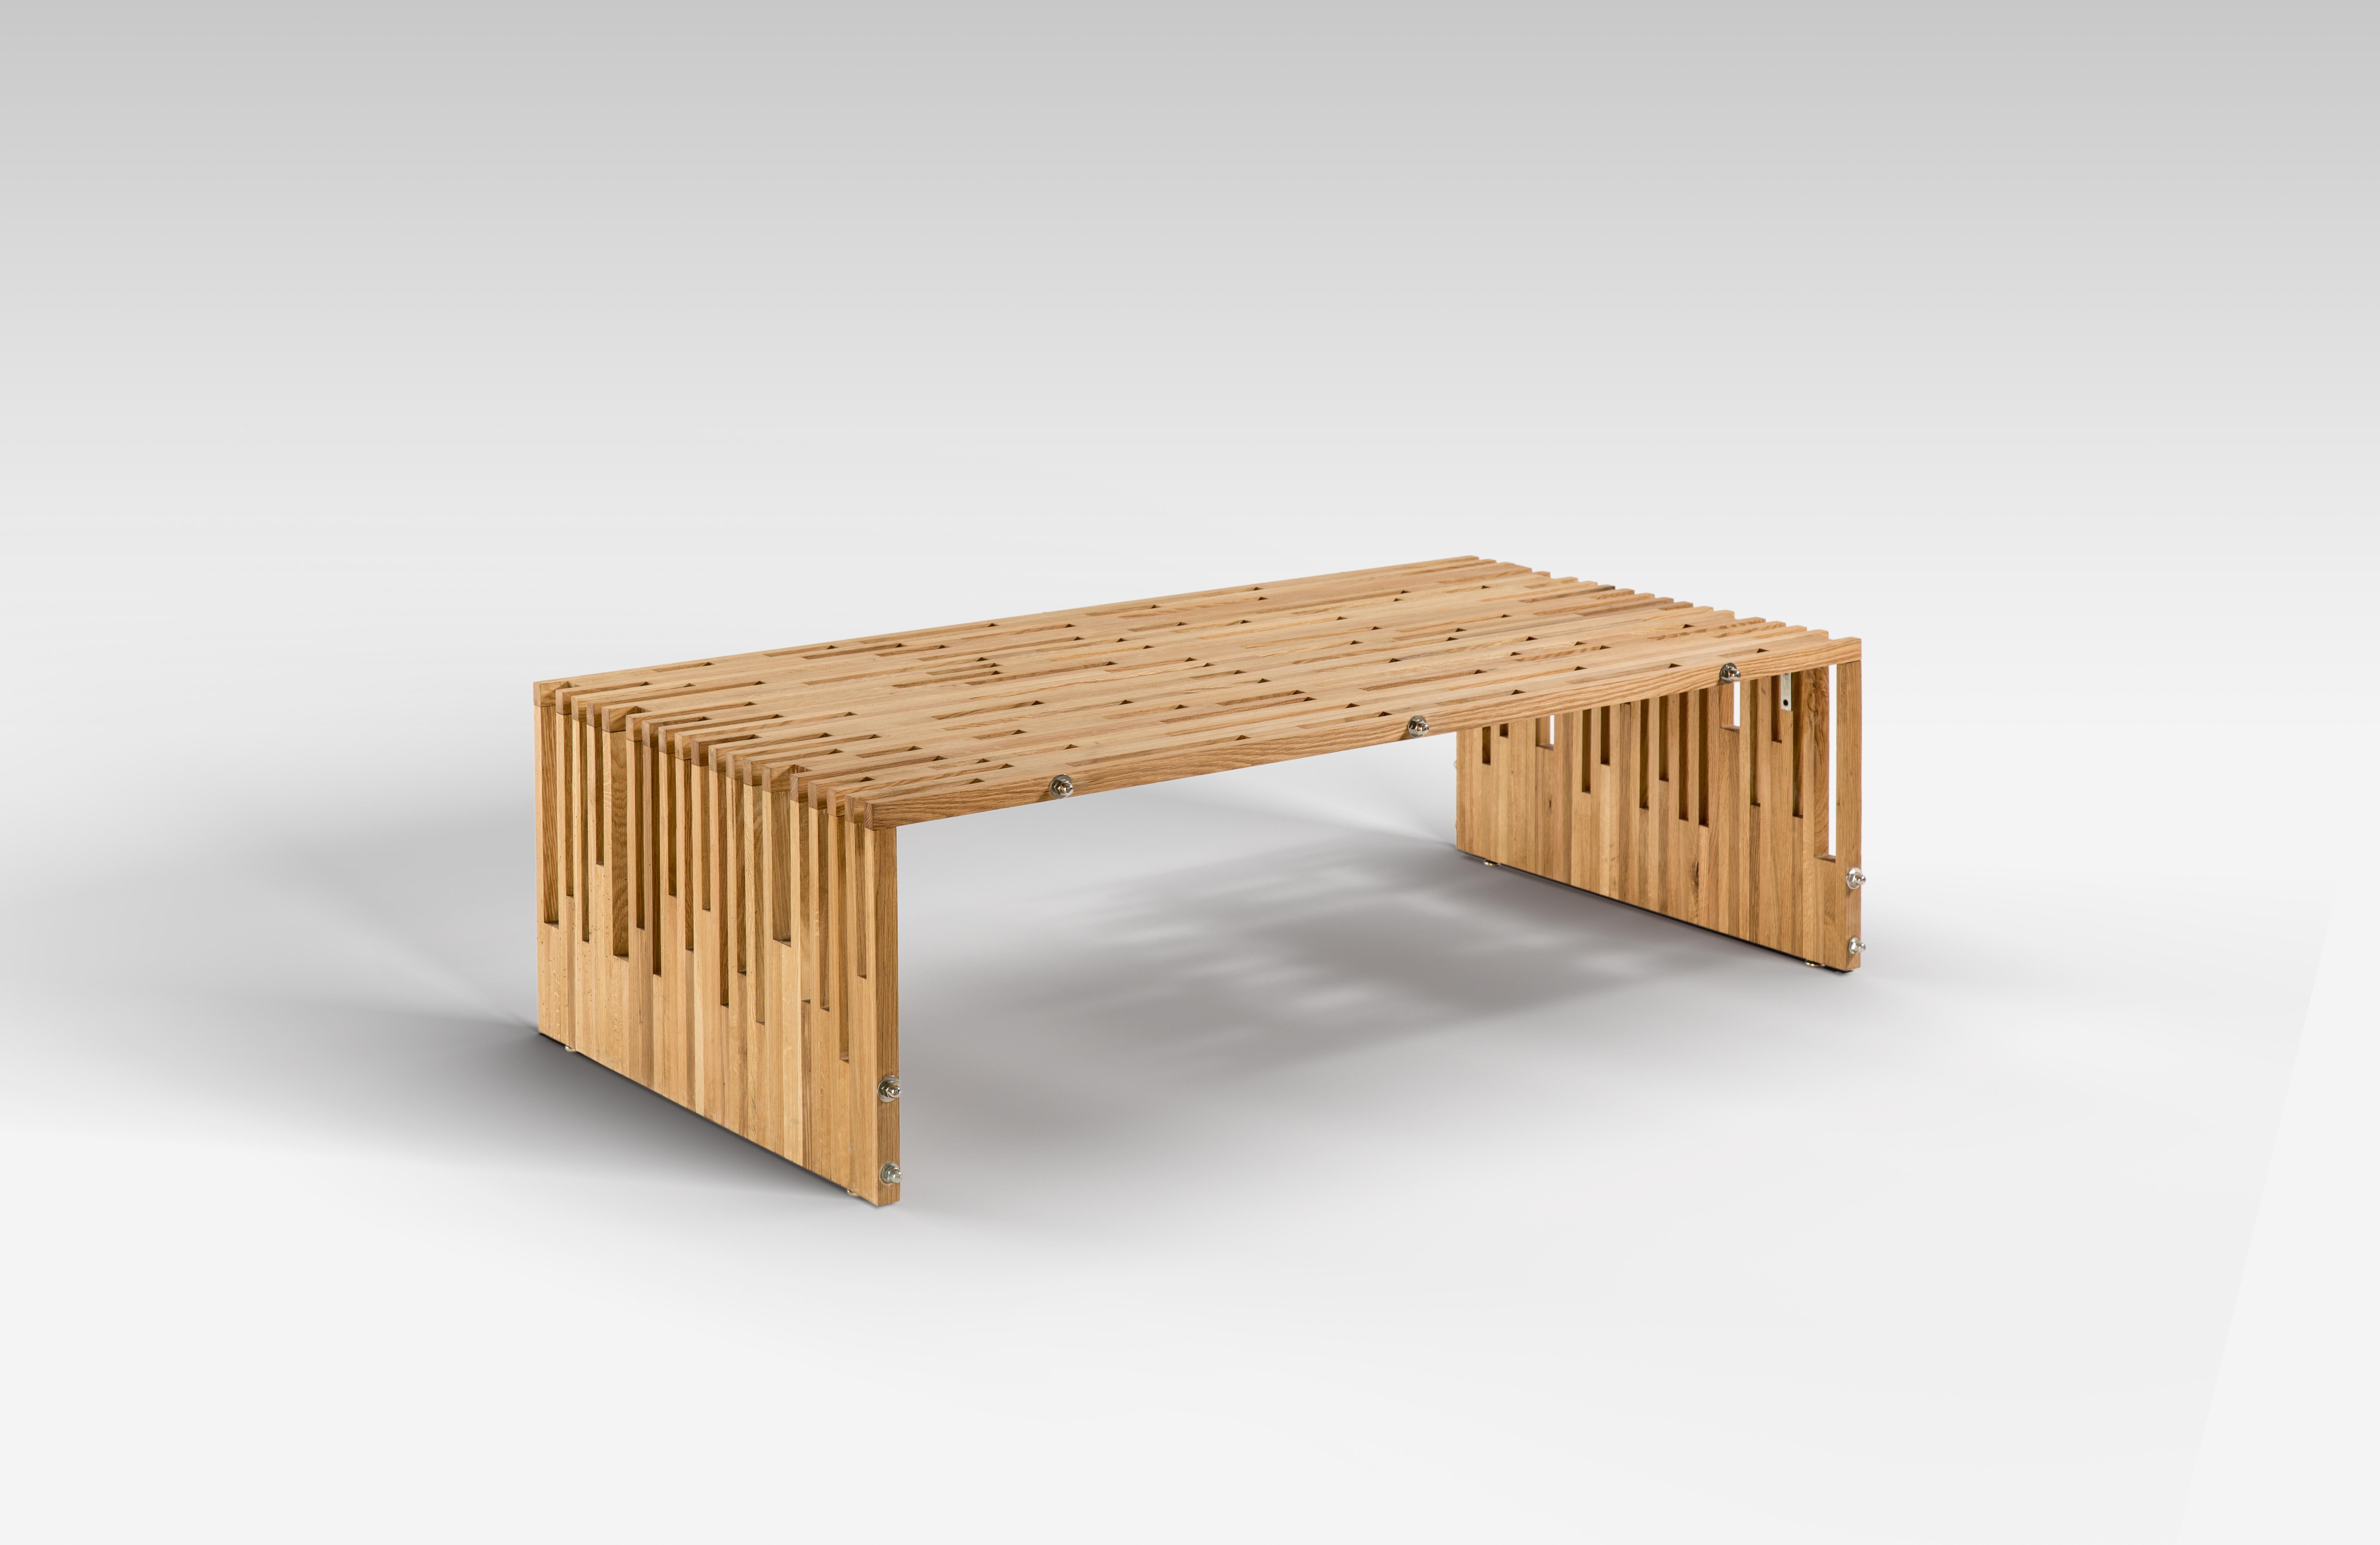 Table basse moderne en bois de chêne traité à l'huile pour l'extérieur.
Embrassez la fraîcheur de l'été avec notre table basse en bois de chêne robuste ; elle sera votre pièce maîtresse ludique et pratique pour l'extérieur. Il possède une belle